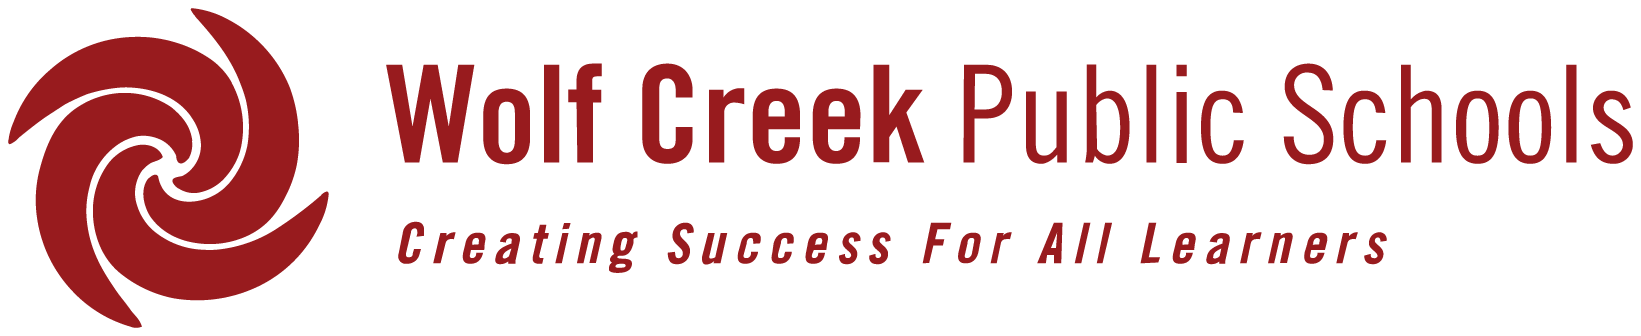 Wolf Creek Public Schools logo